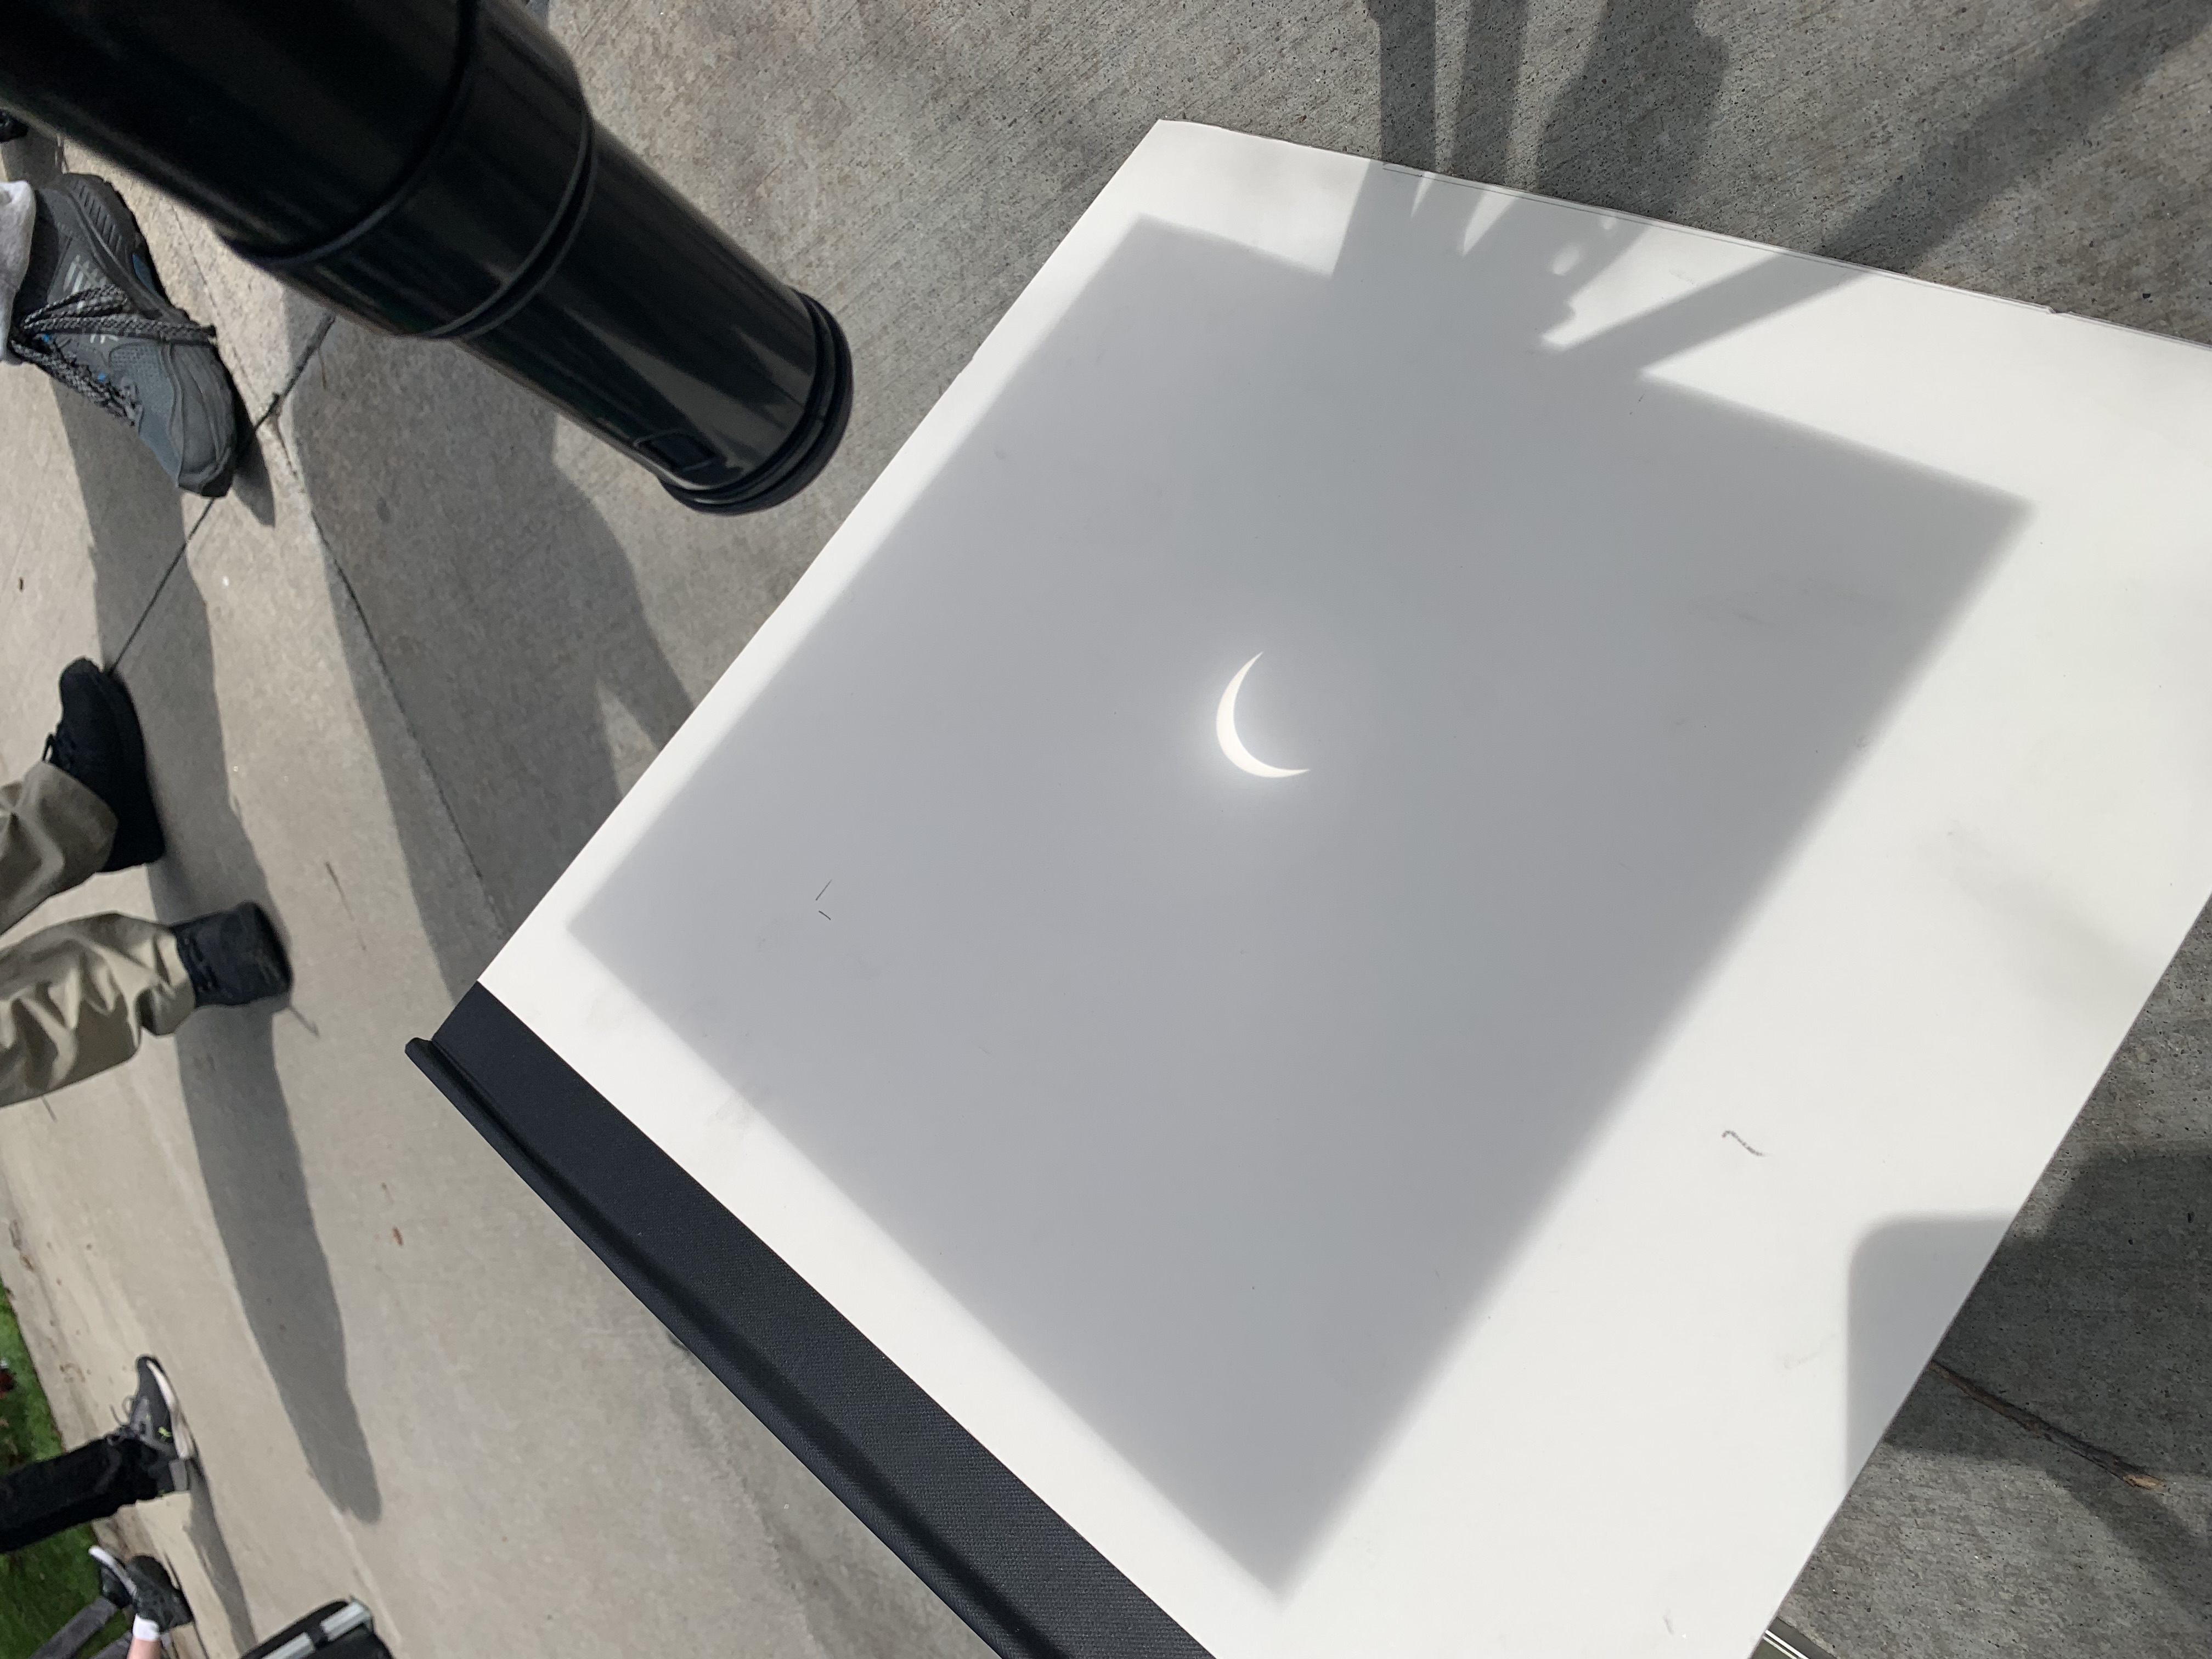 Partial eclipse projection